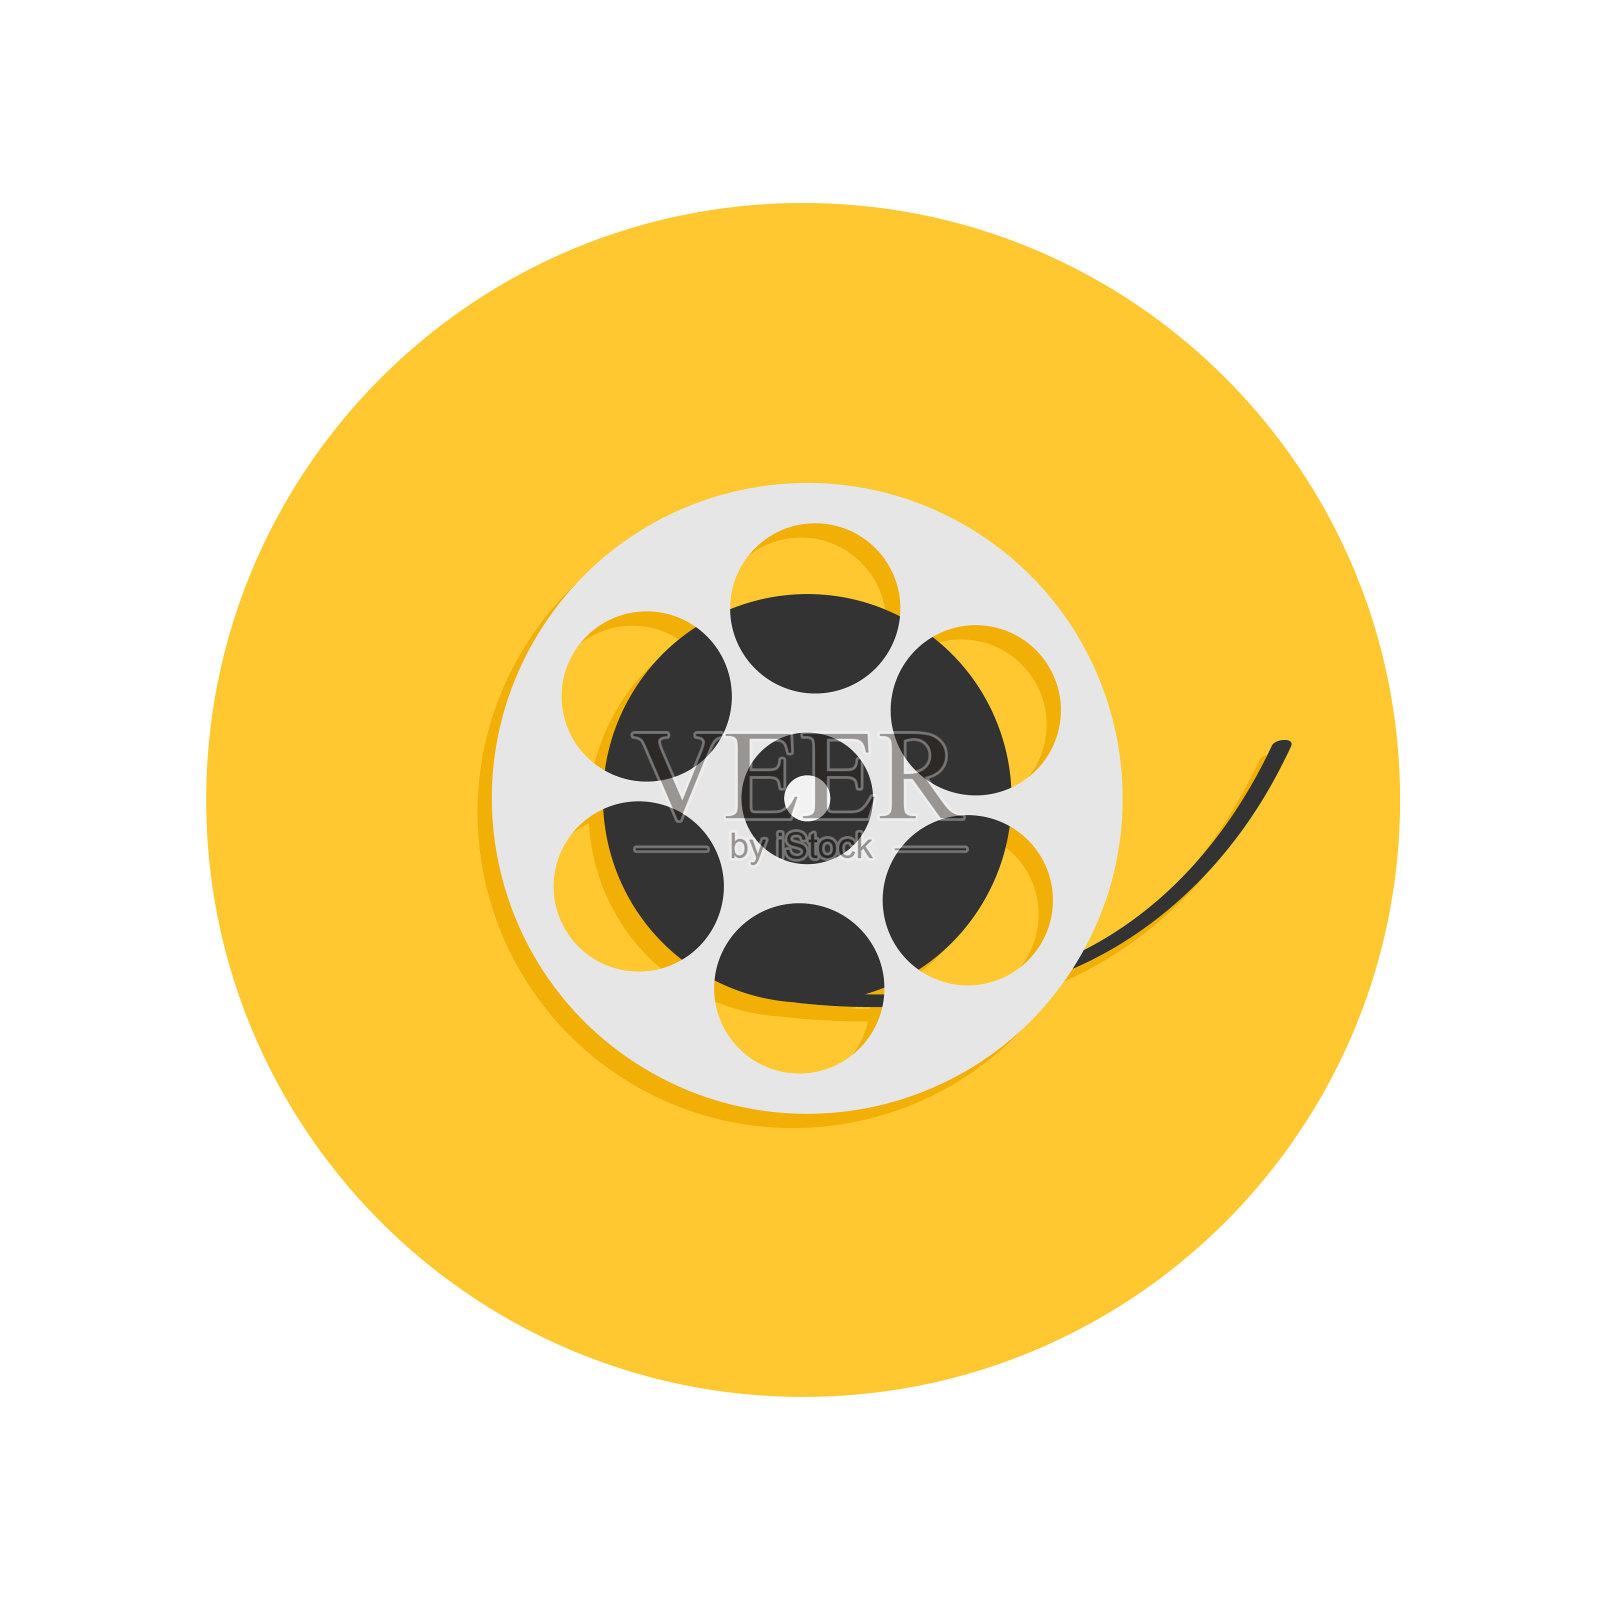 电影电影卷轴。我喜欢电影院的圆形图标。平面设计风格。黄色背景。孤立。插画图片素材